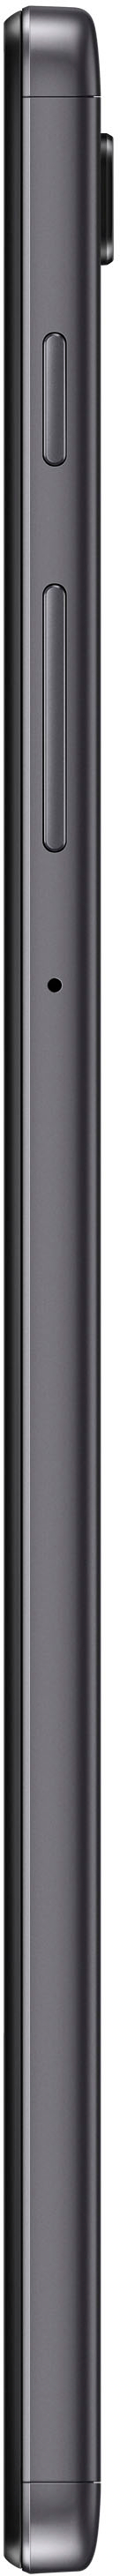 Samsung Galaxy Tab A7 Lite 8.7 64 GB Wi-Fi Silver SM-T220NZSFXAR - Best Buy